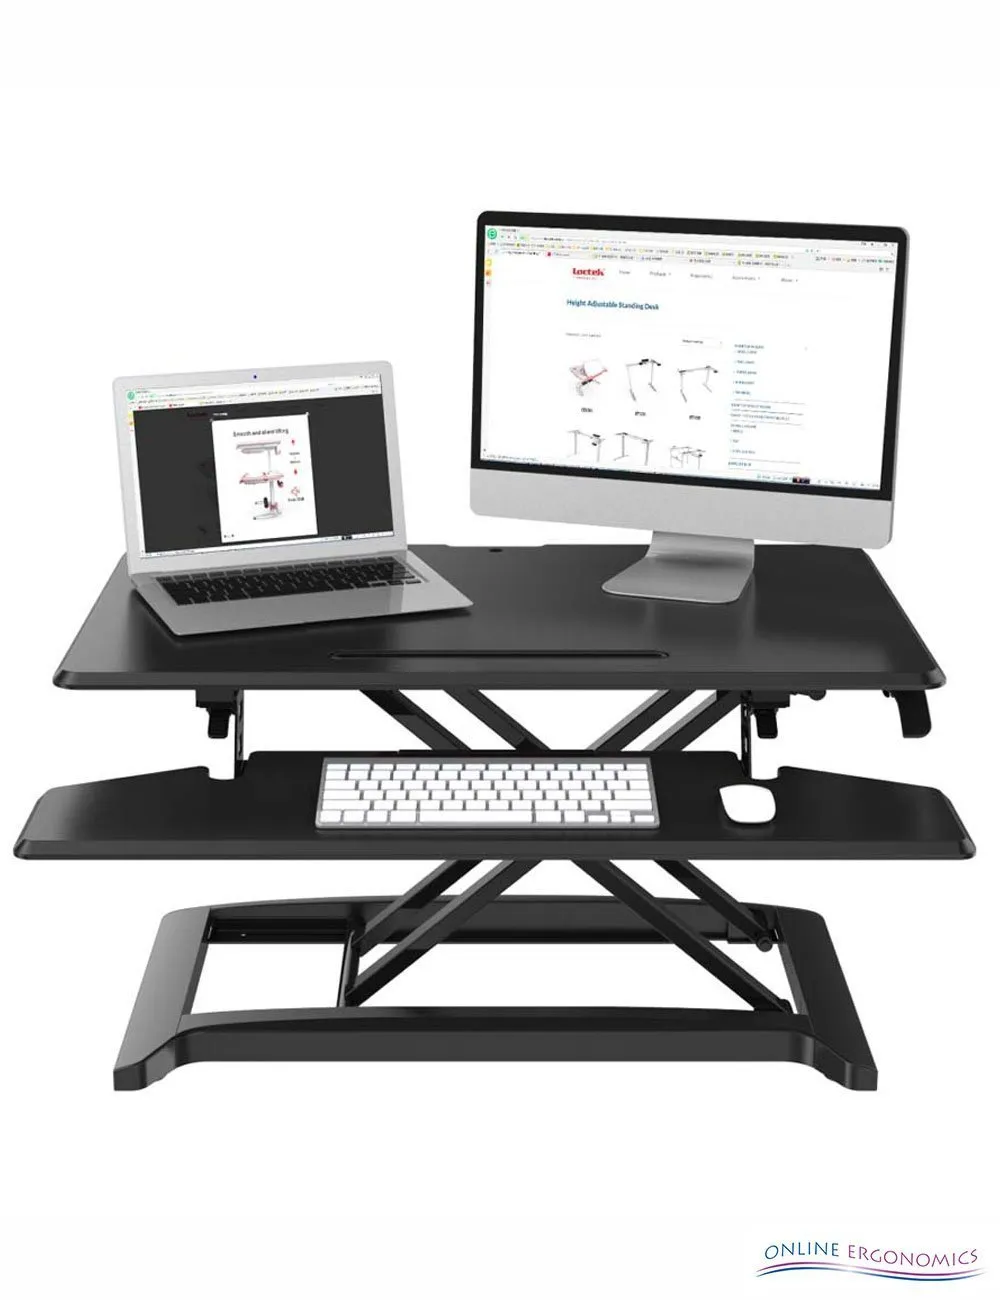 le-vate-pro-online-ergonomics